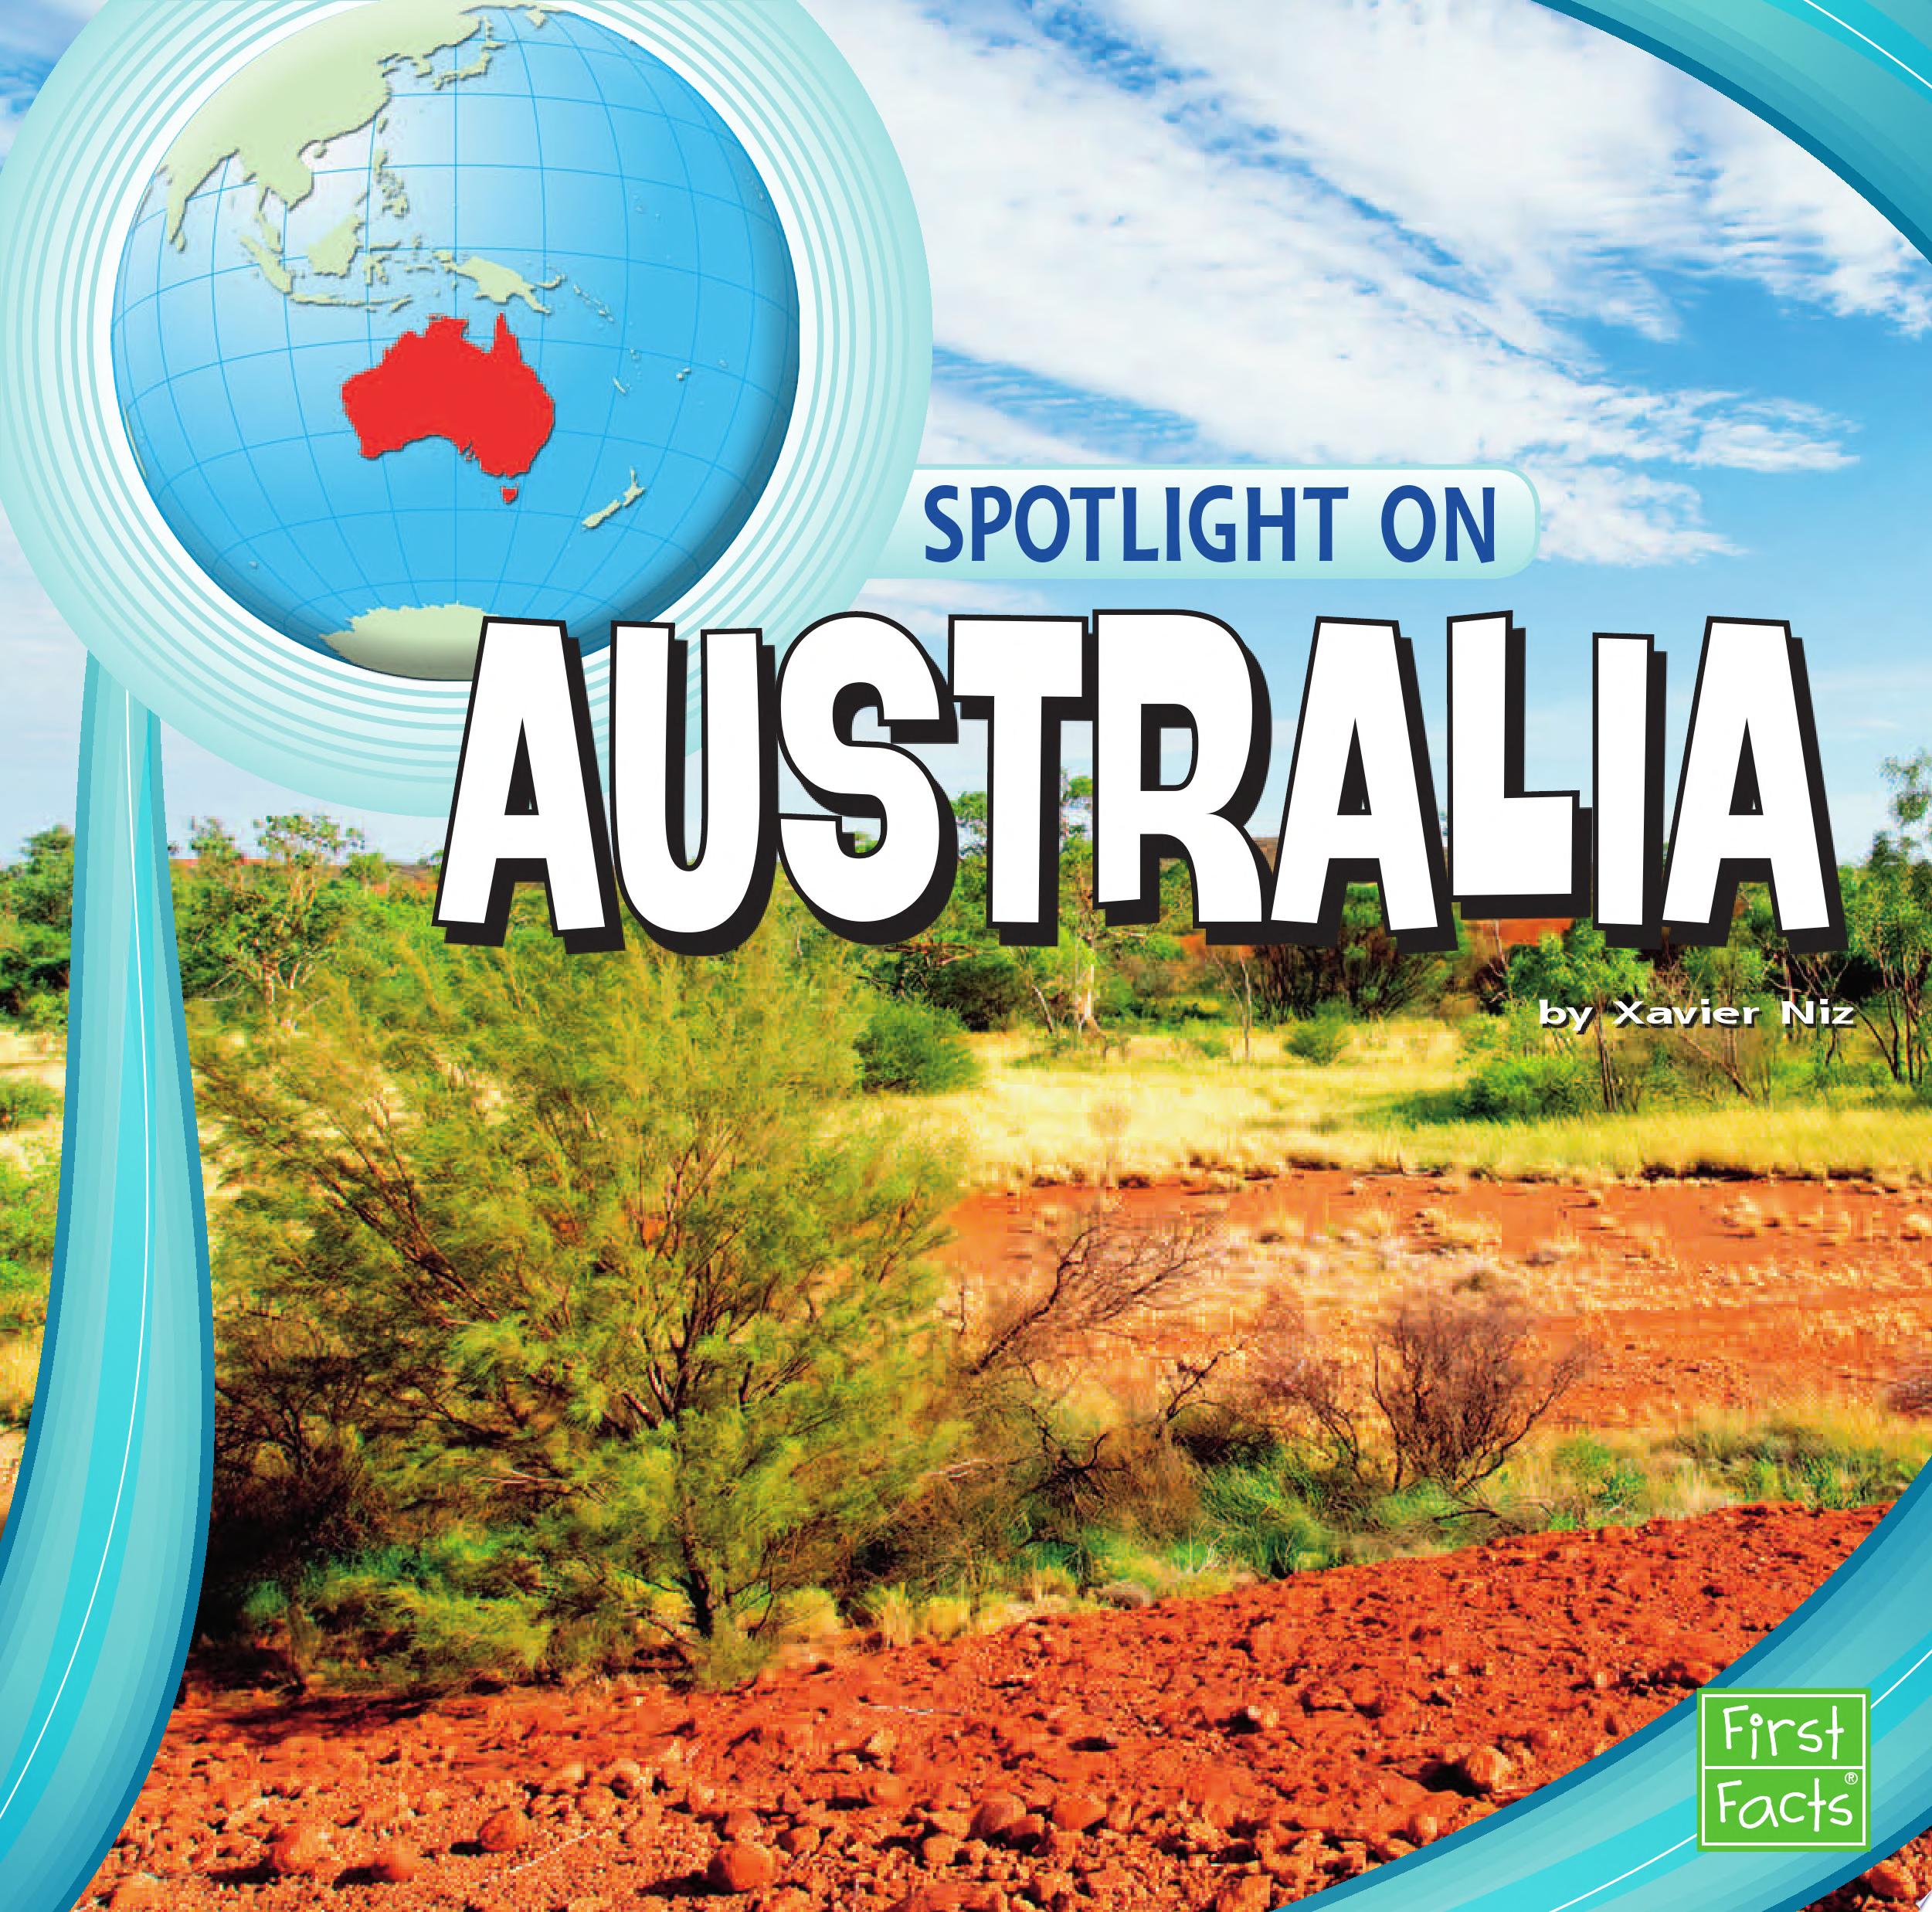 Image for "Spotlight on Australia"